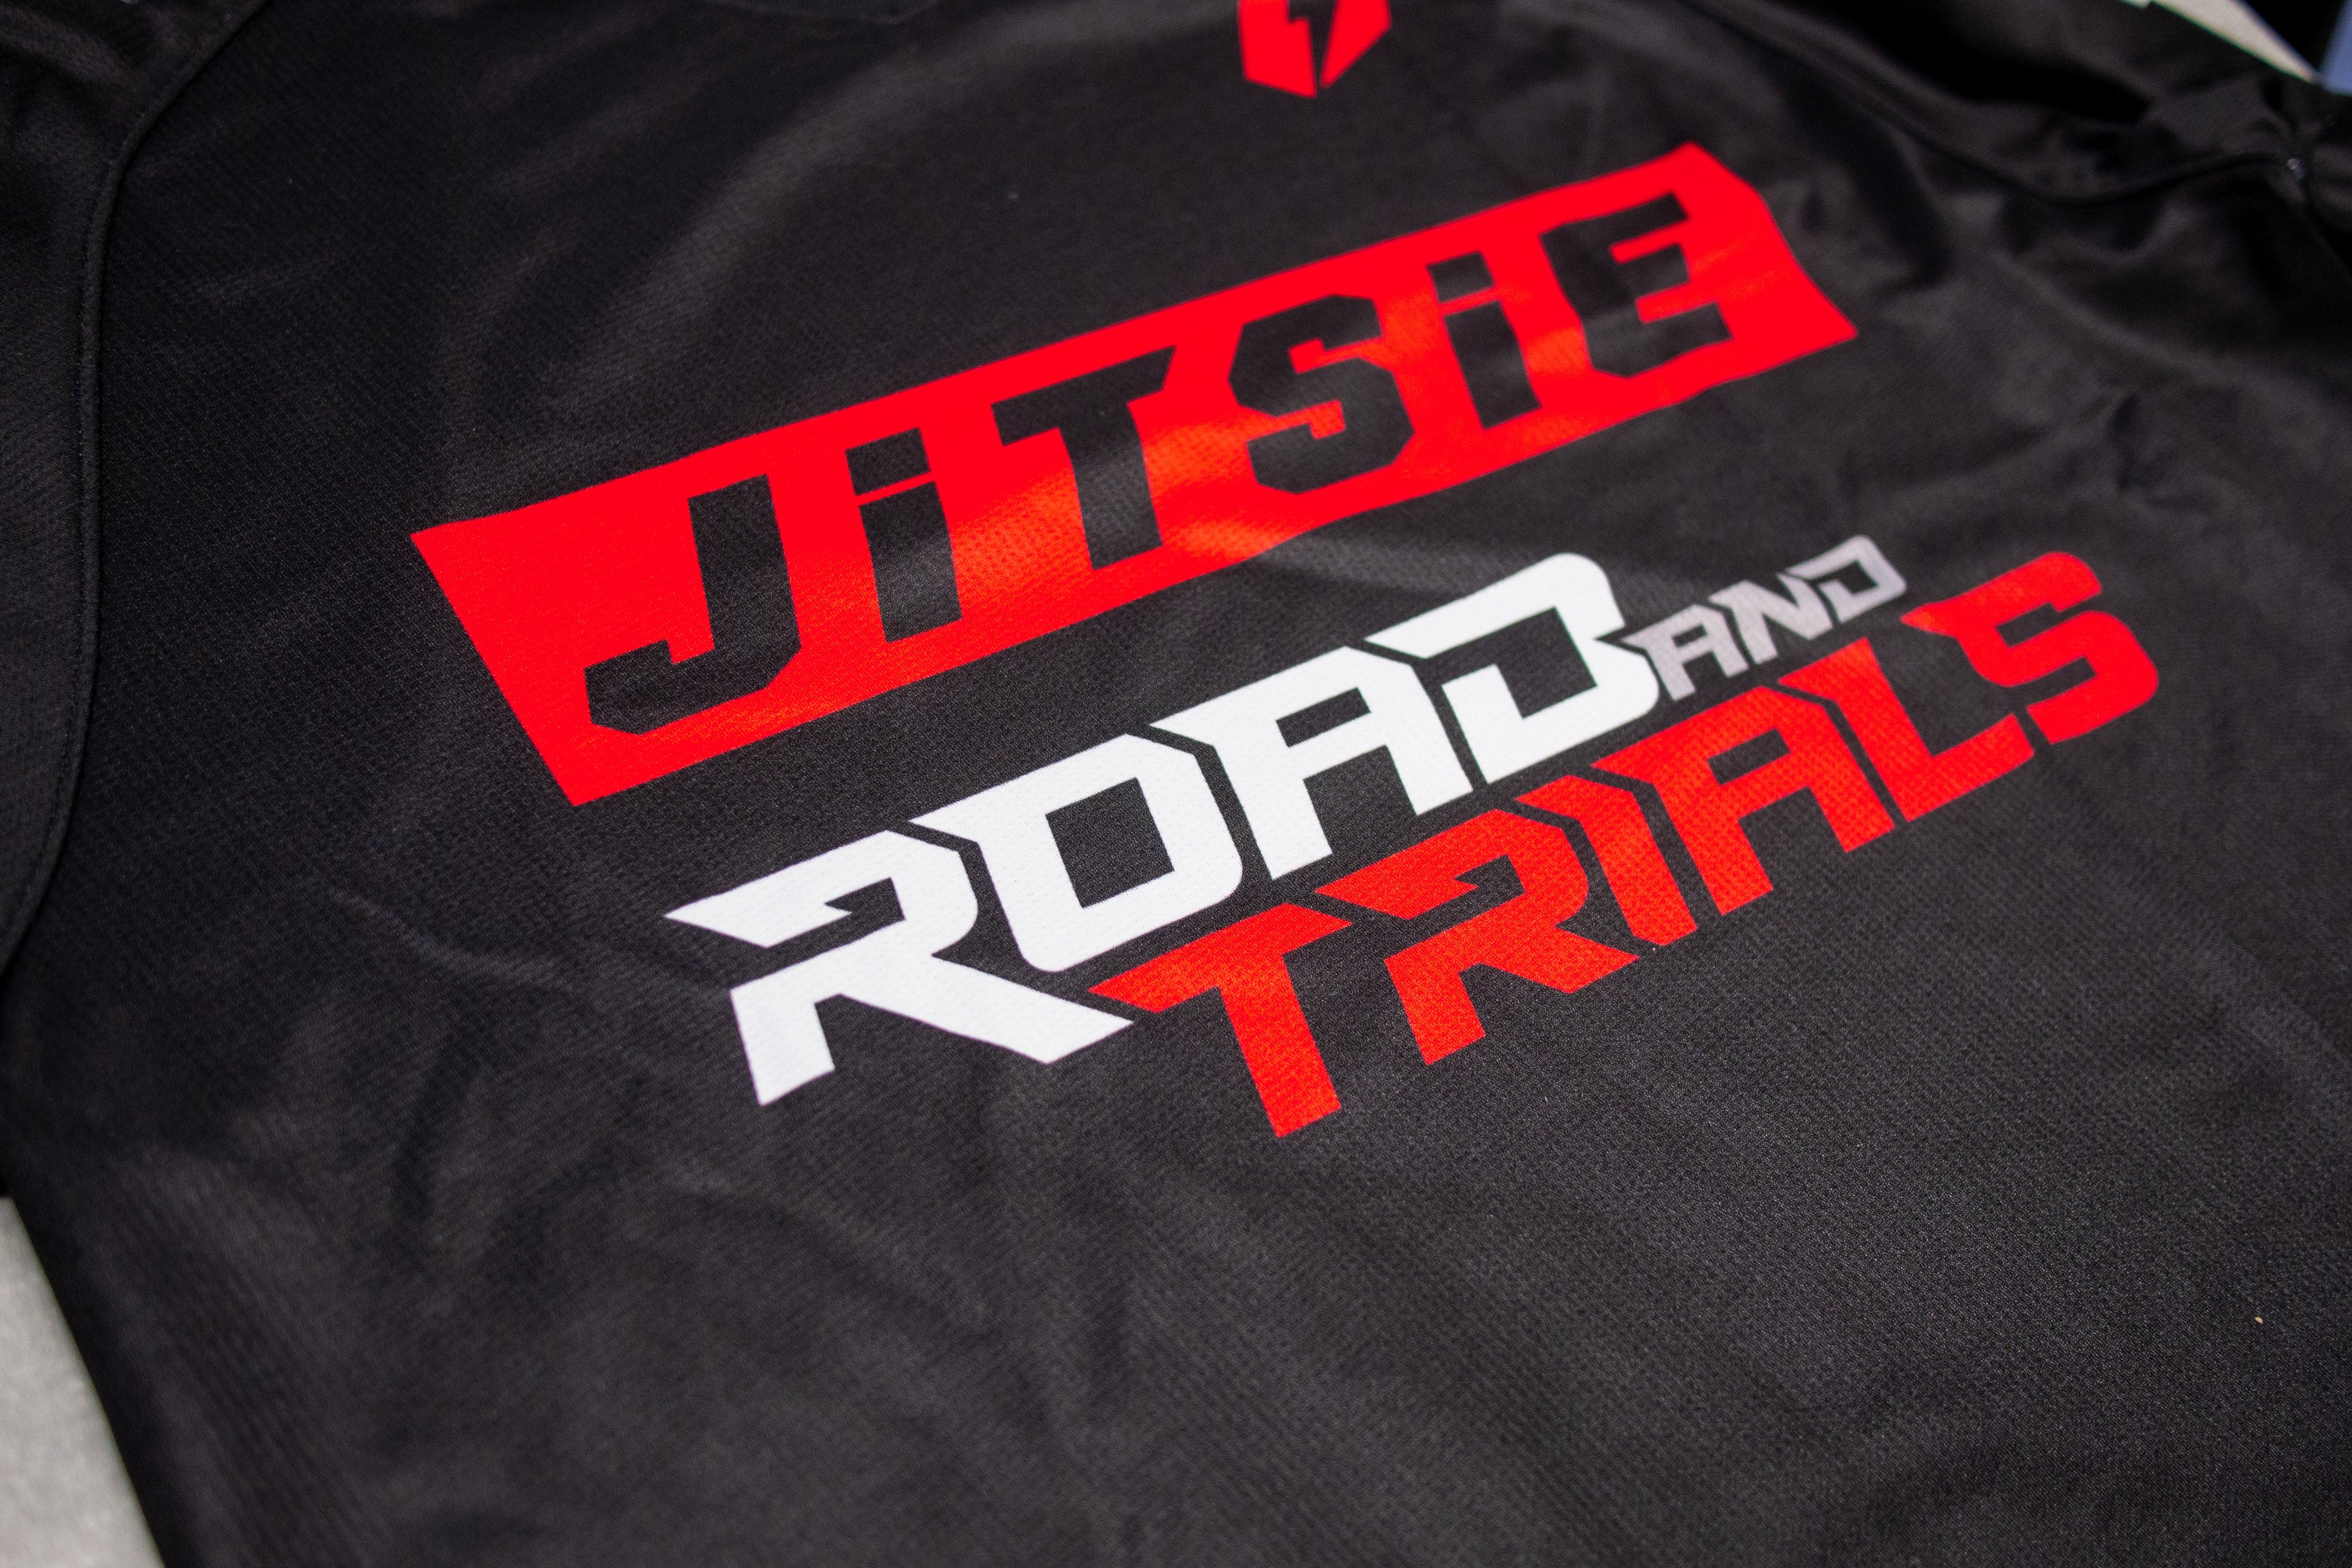 Road and Trials X Jitsie Trials Shirt - Black